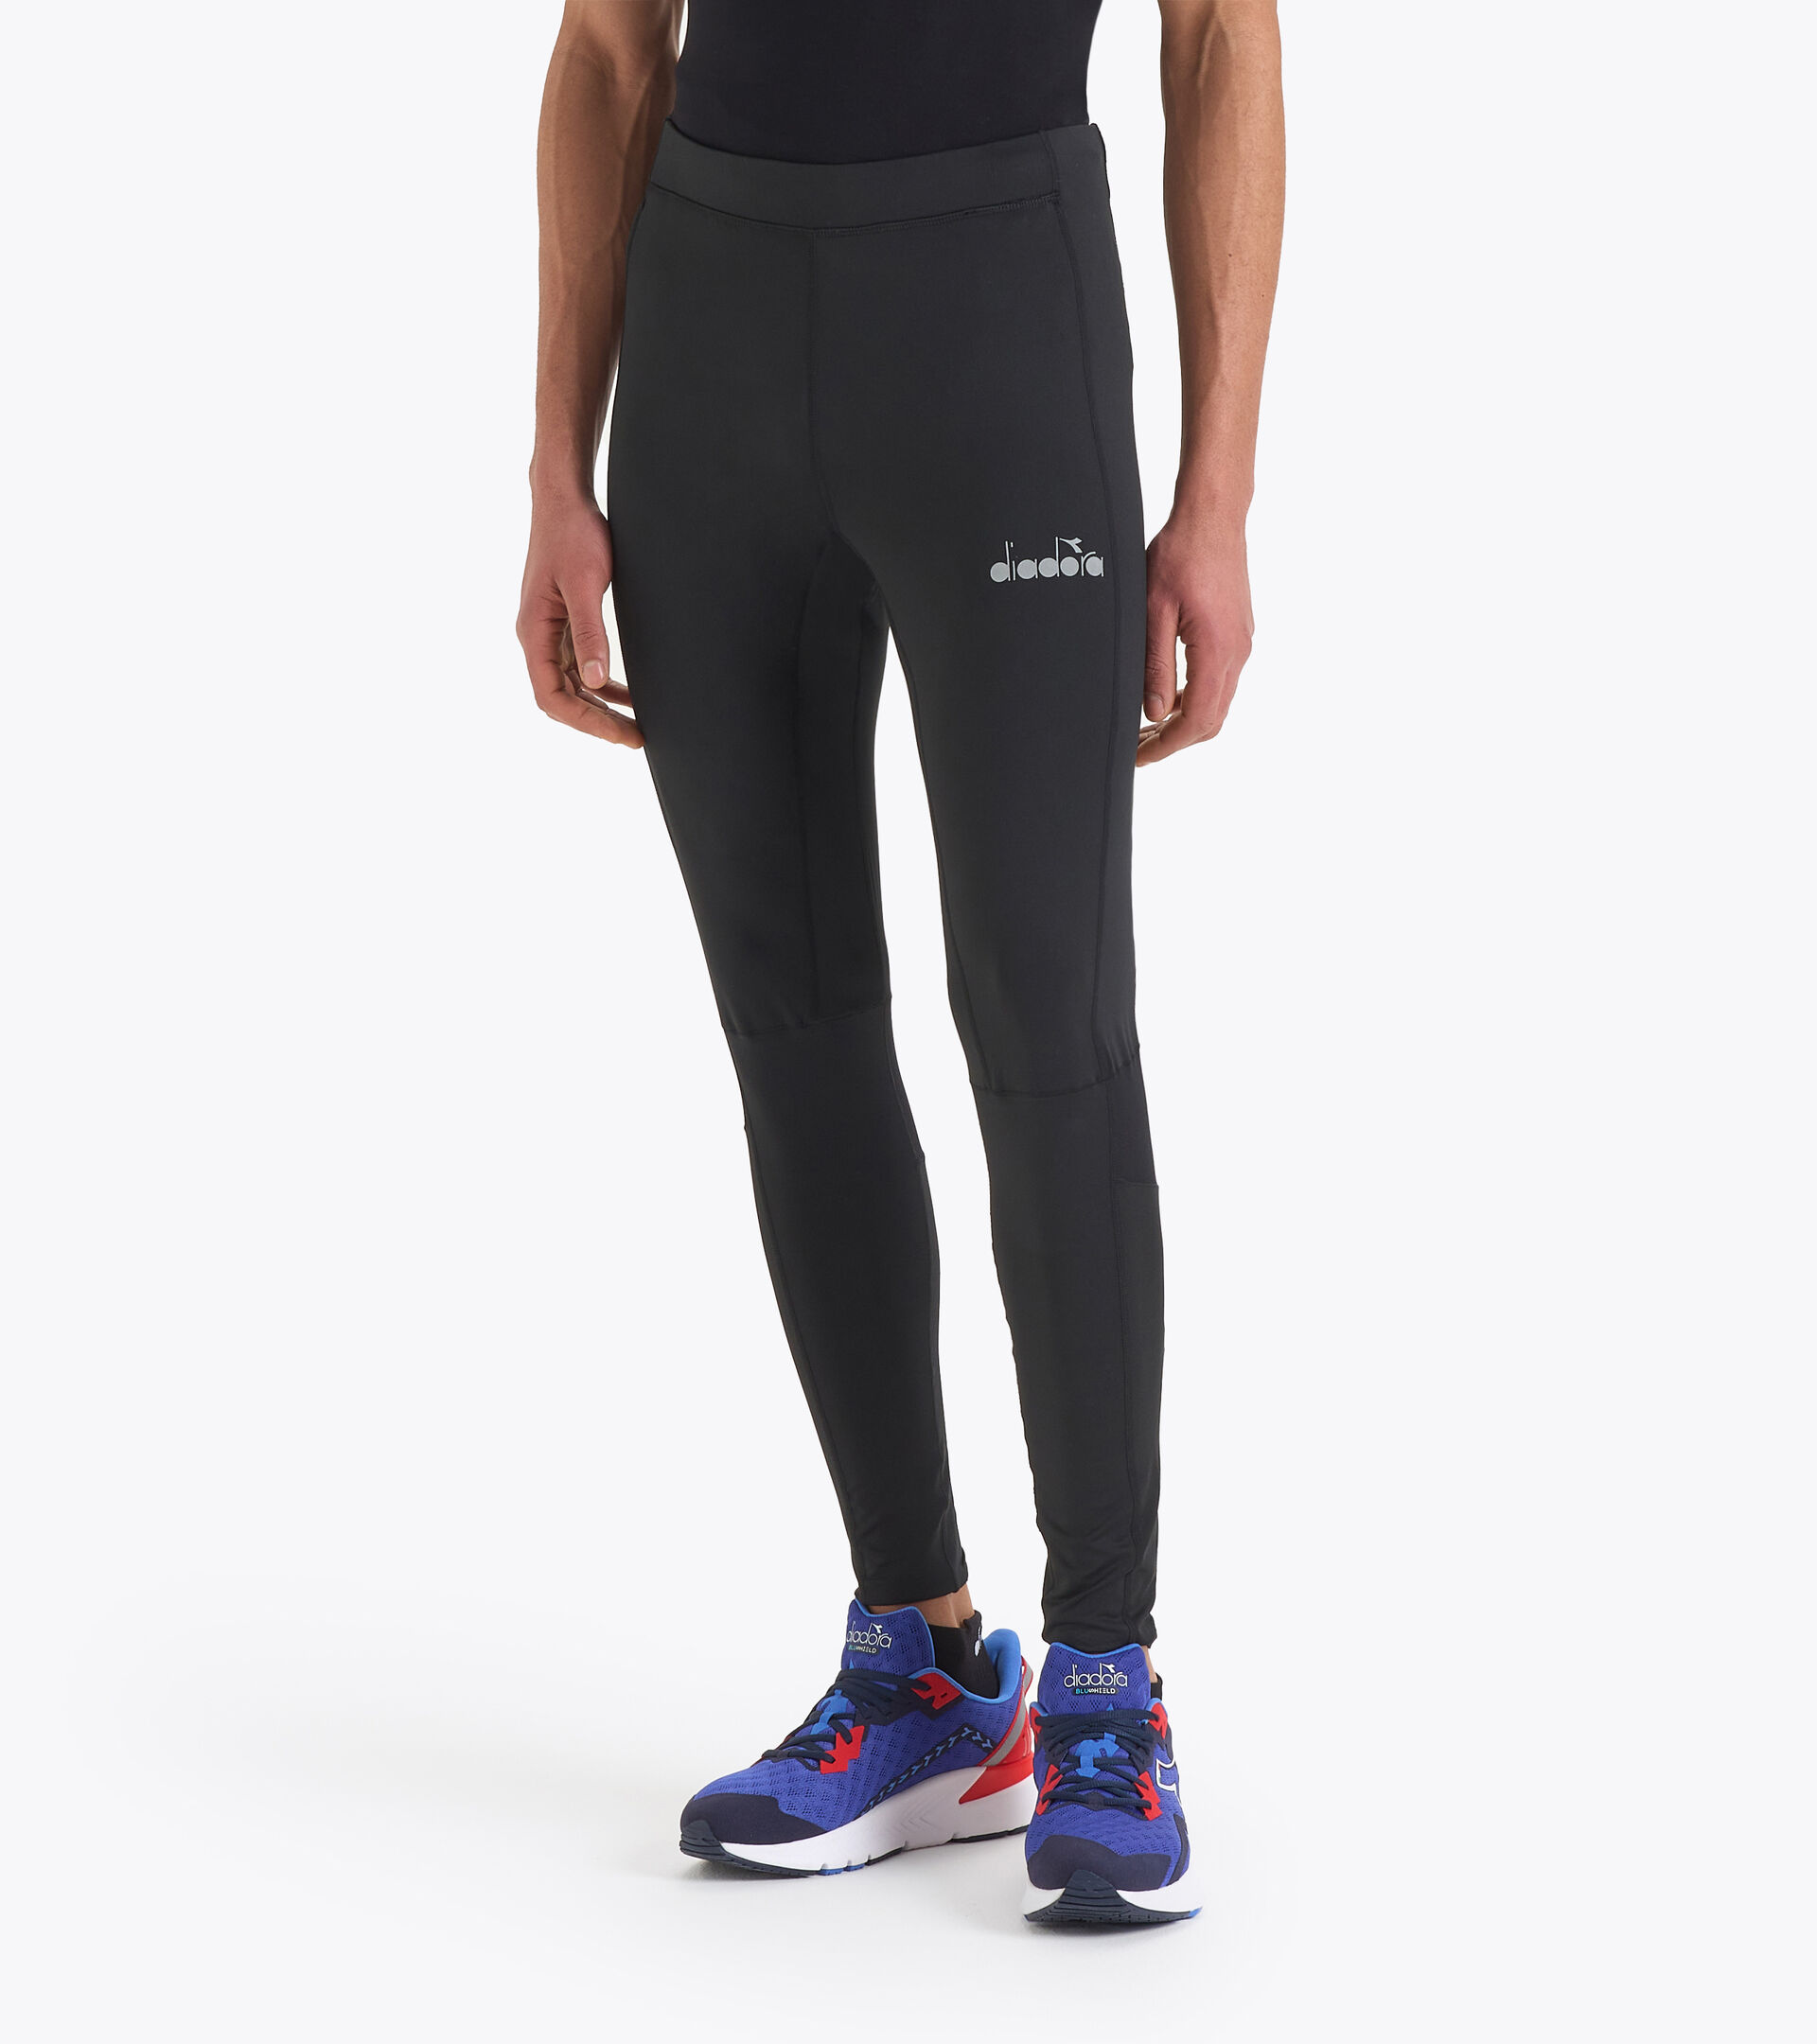 RUNNING TIGHTS Running leggings - Men - Diadora Online Store CA